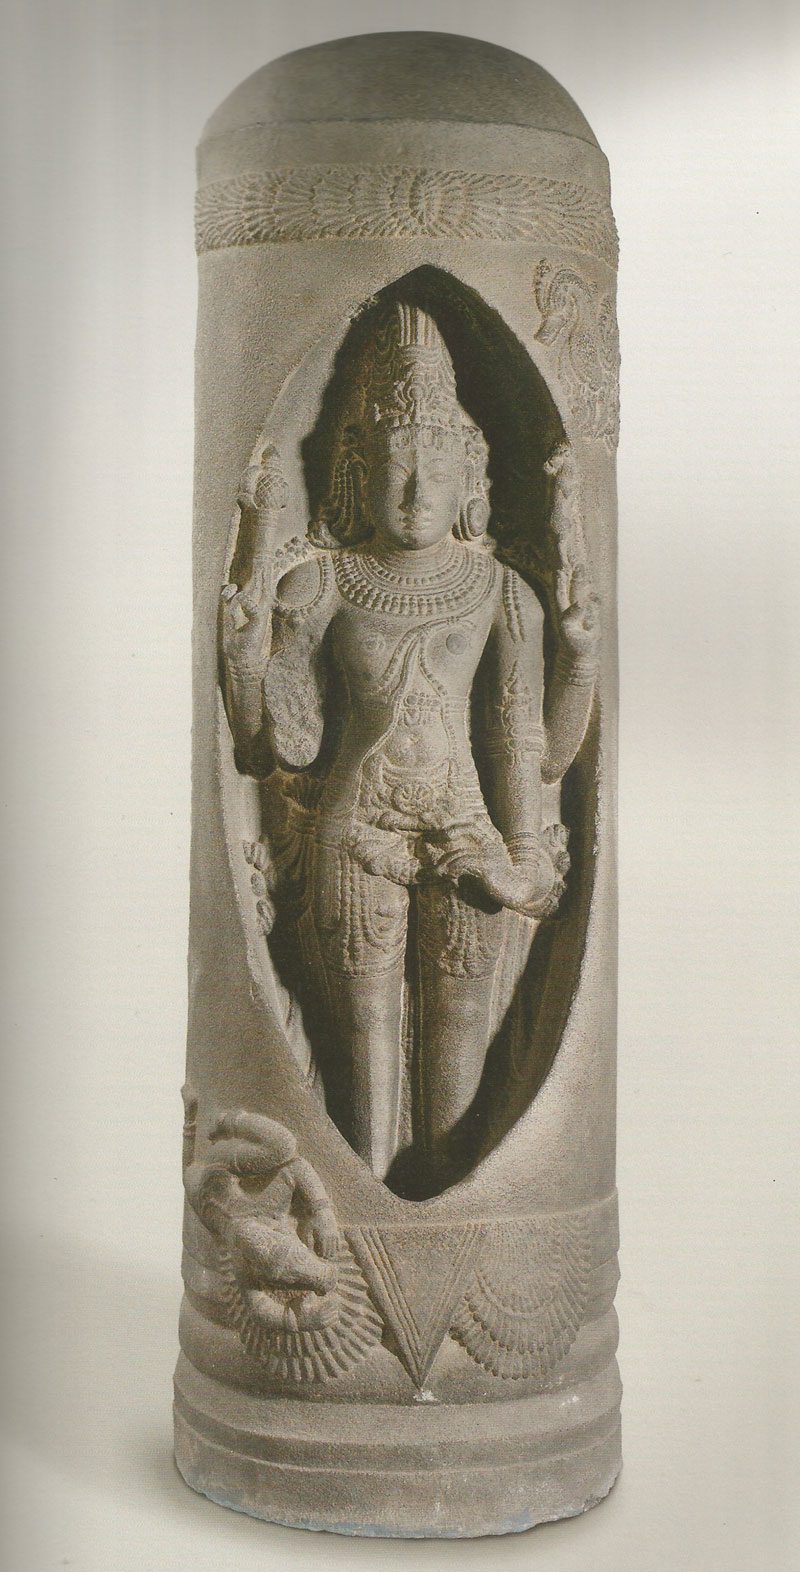 Lingodbhavamurti, Shiva emerges out of the linga